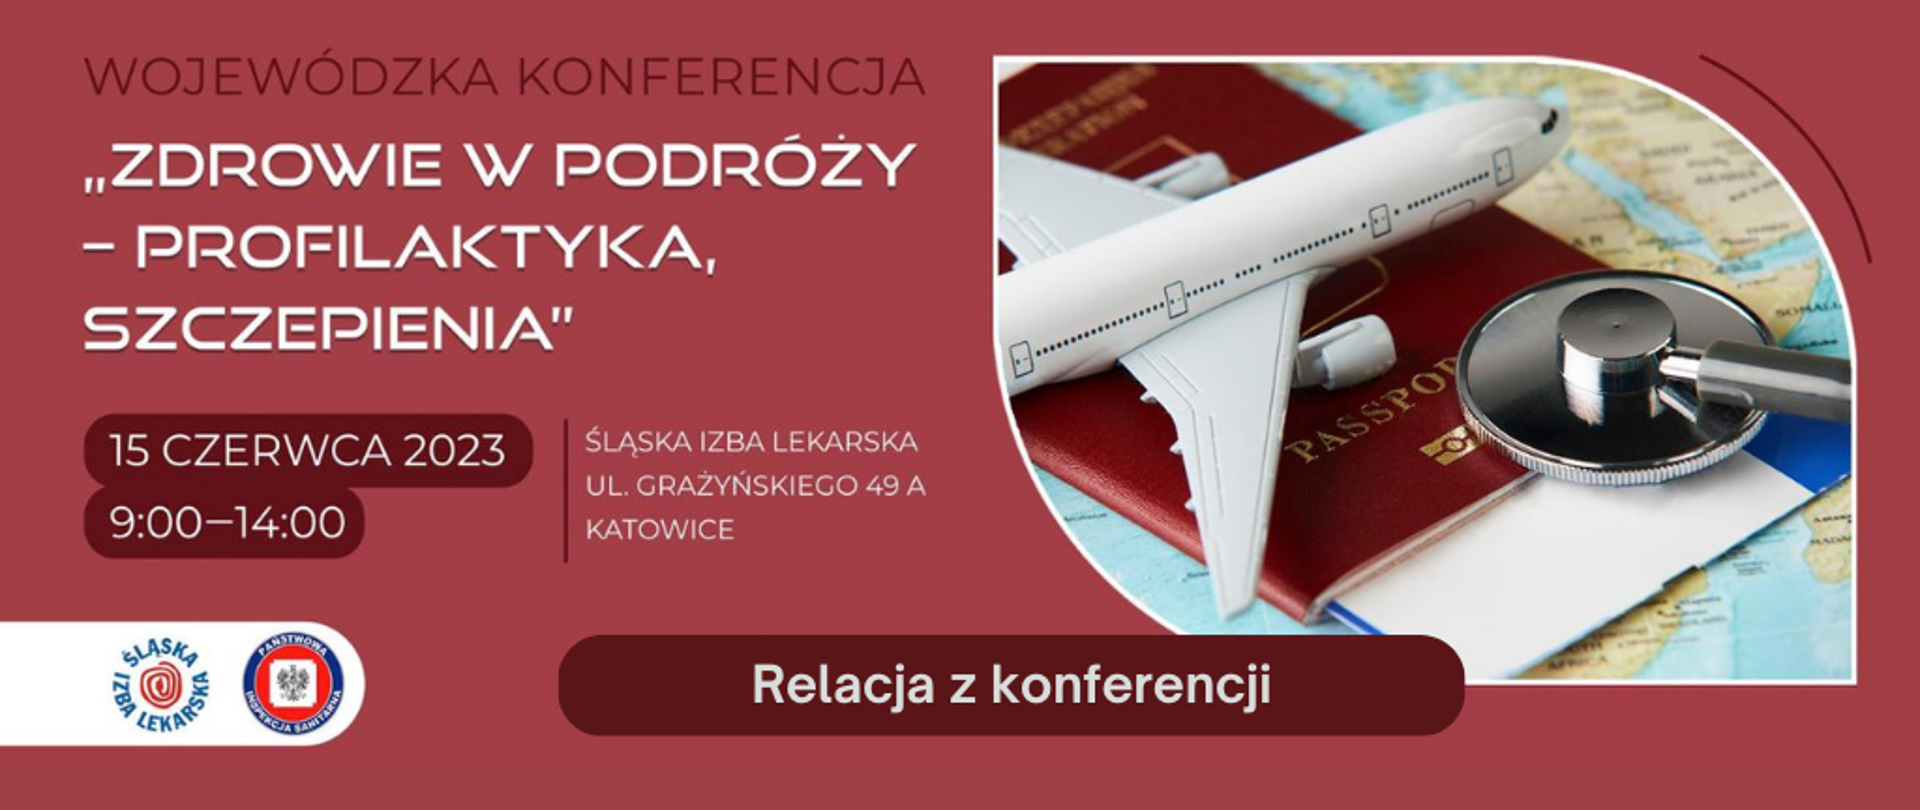 Banner informacyjny dotyczący relacji z Wojewódzkiej Konferencji "Zdrowie w podróży - profilaktyka, szczepienia"